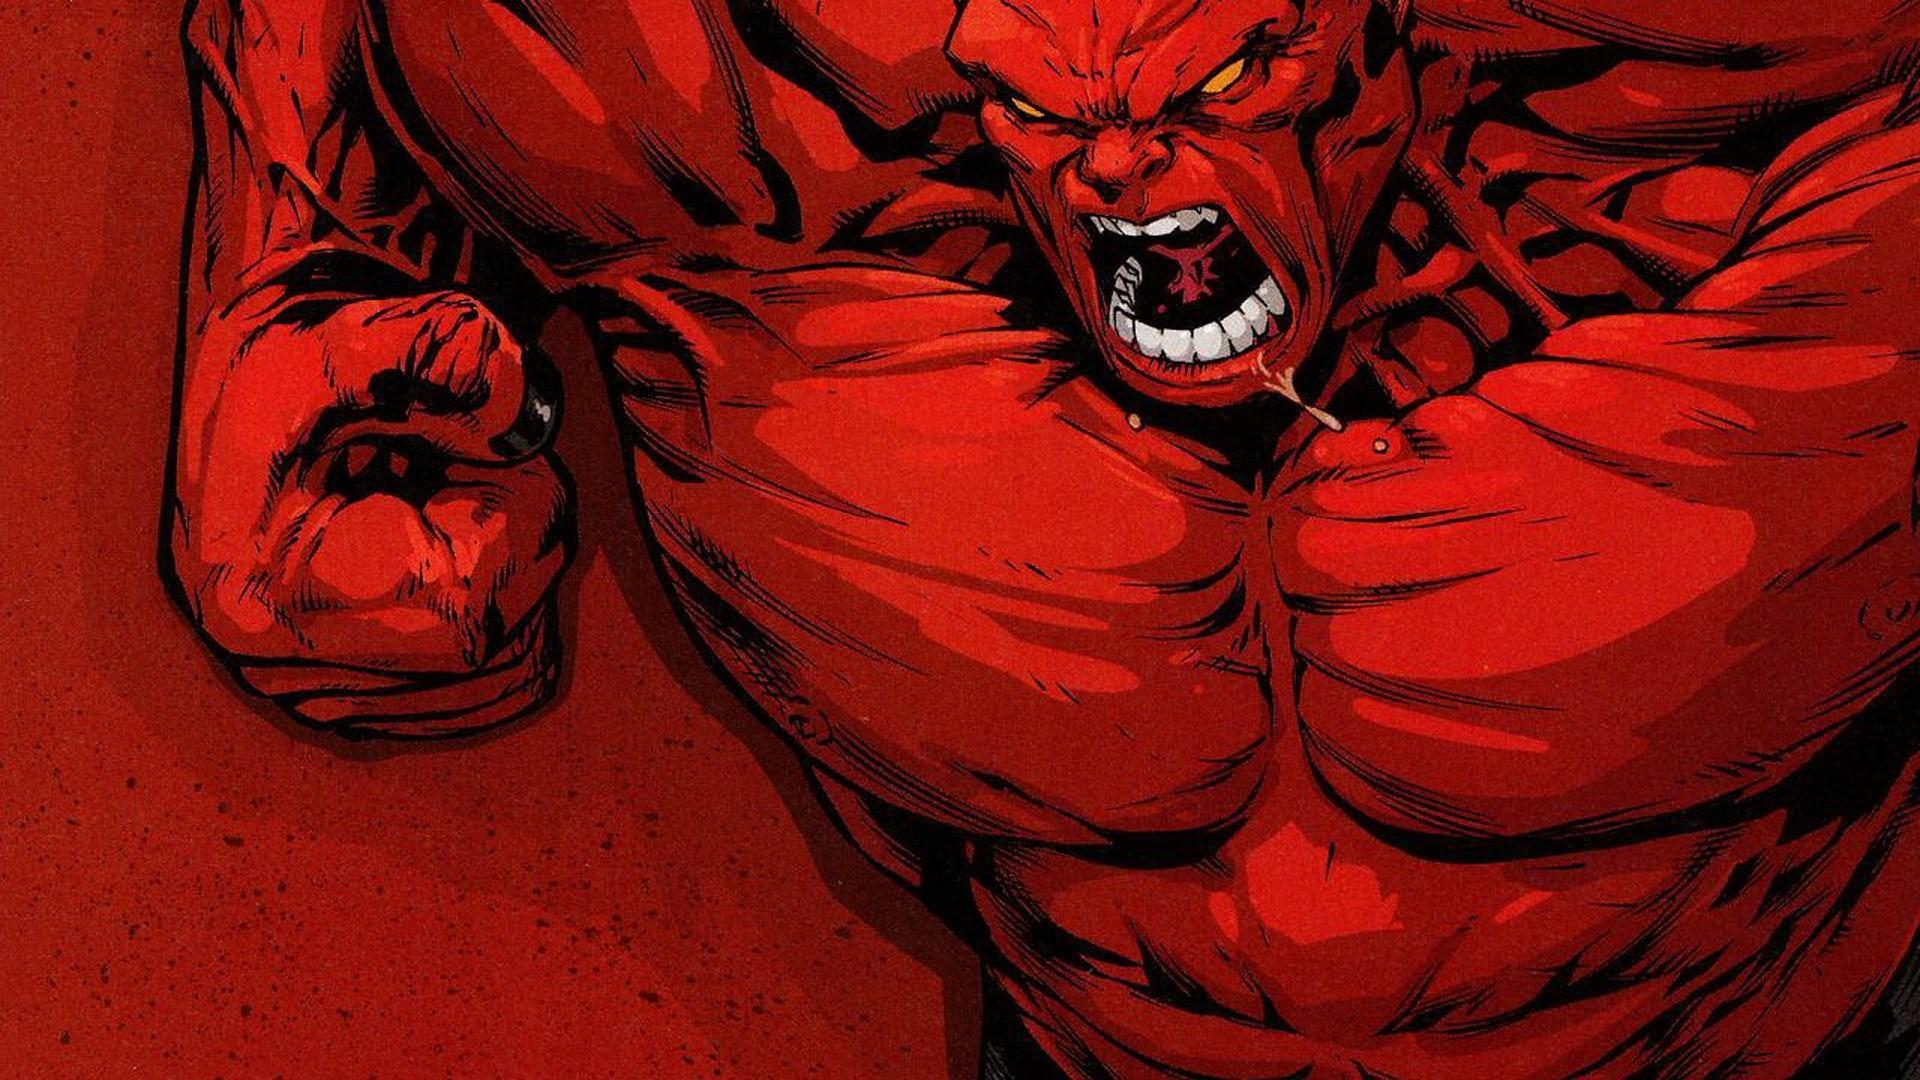 ハルクの壁紙,赤,架空の人物,スーパーヒーロー,悪魔,肉